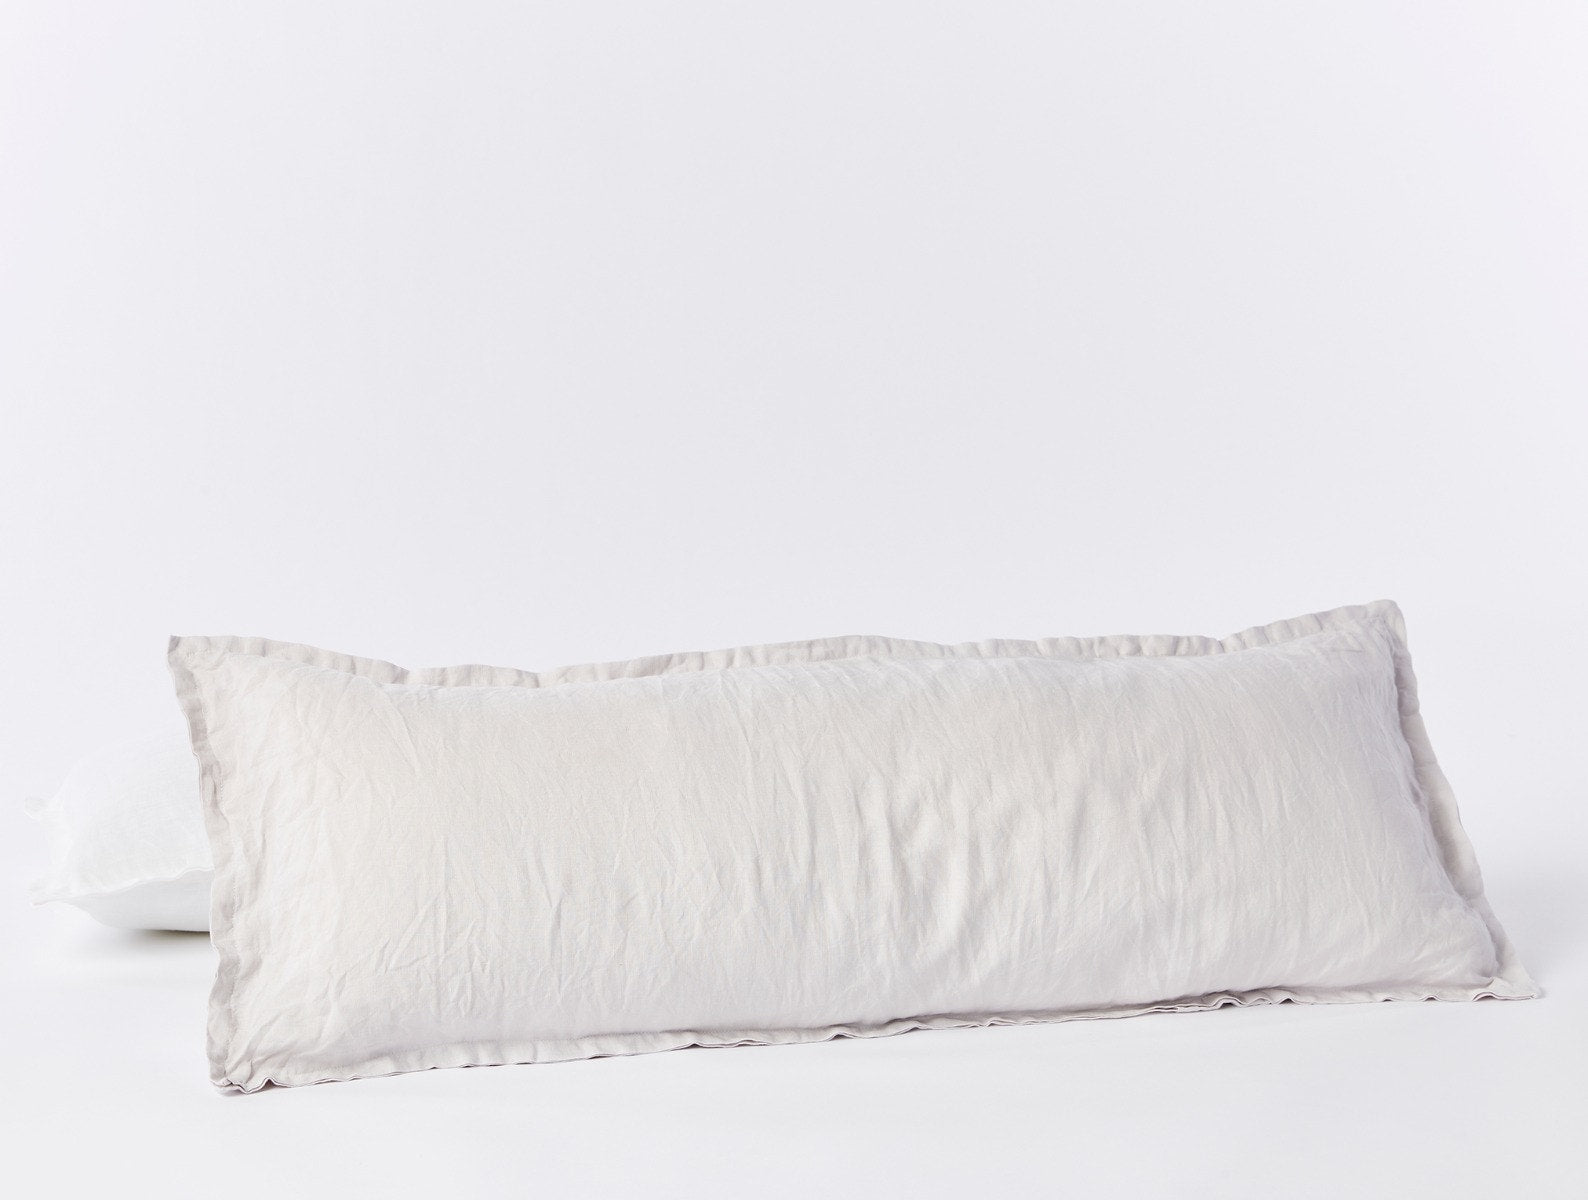 European Flax Linen Oversized Lumbar Pillow Cover